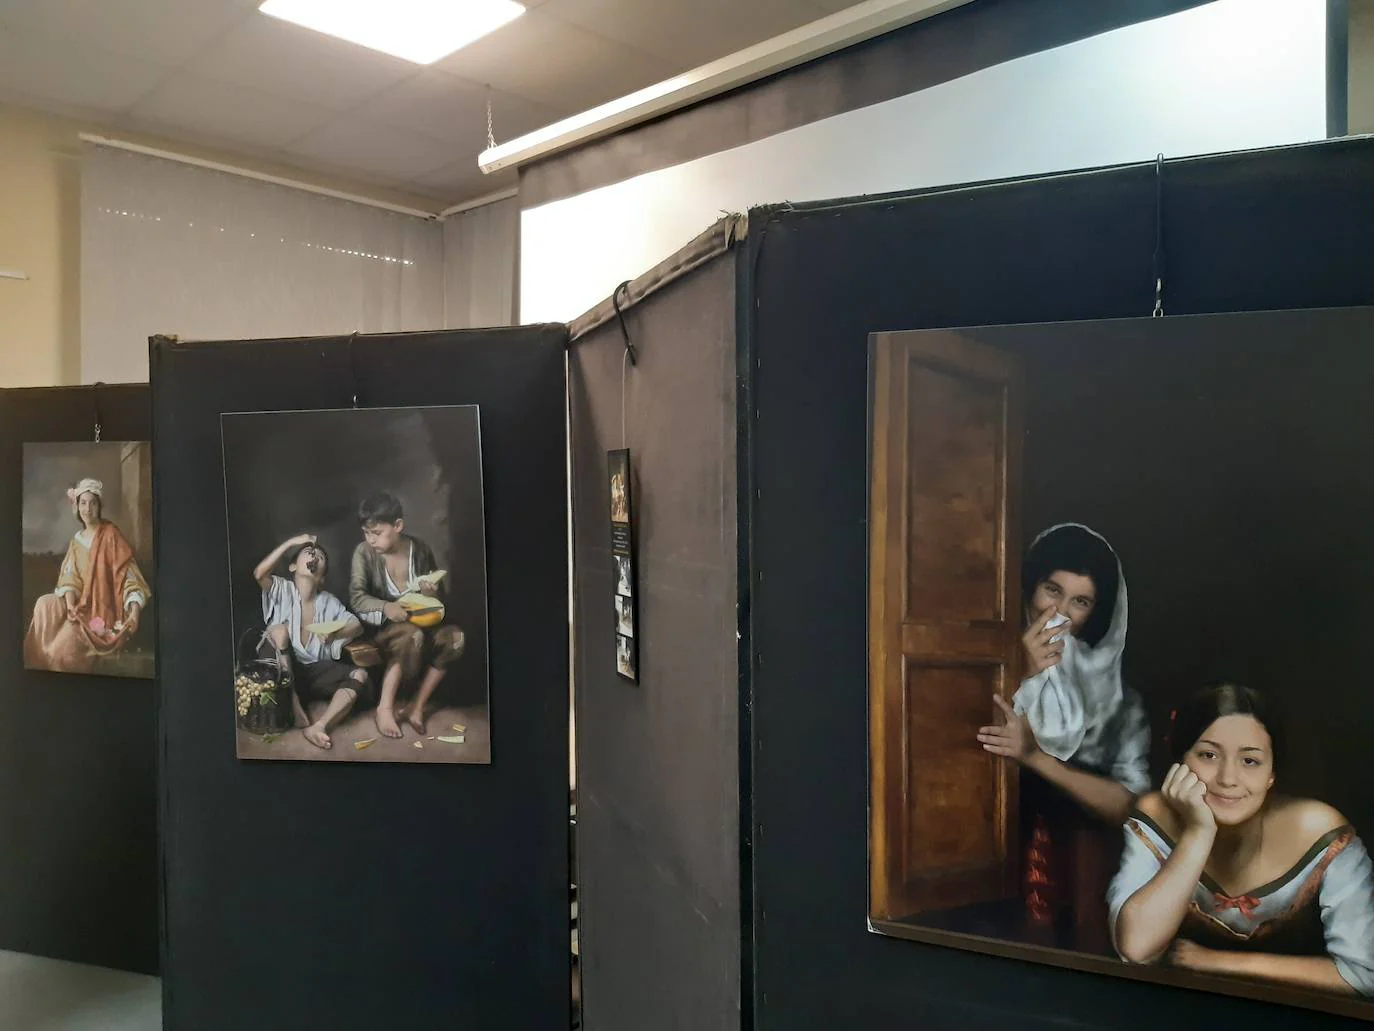 Imagen principal - Fotografía y pintura se mezclan en la muestra del artista y profesor cacereño Antonio Jesús Pérez Toranzo